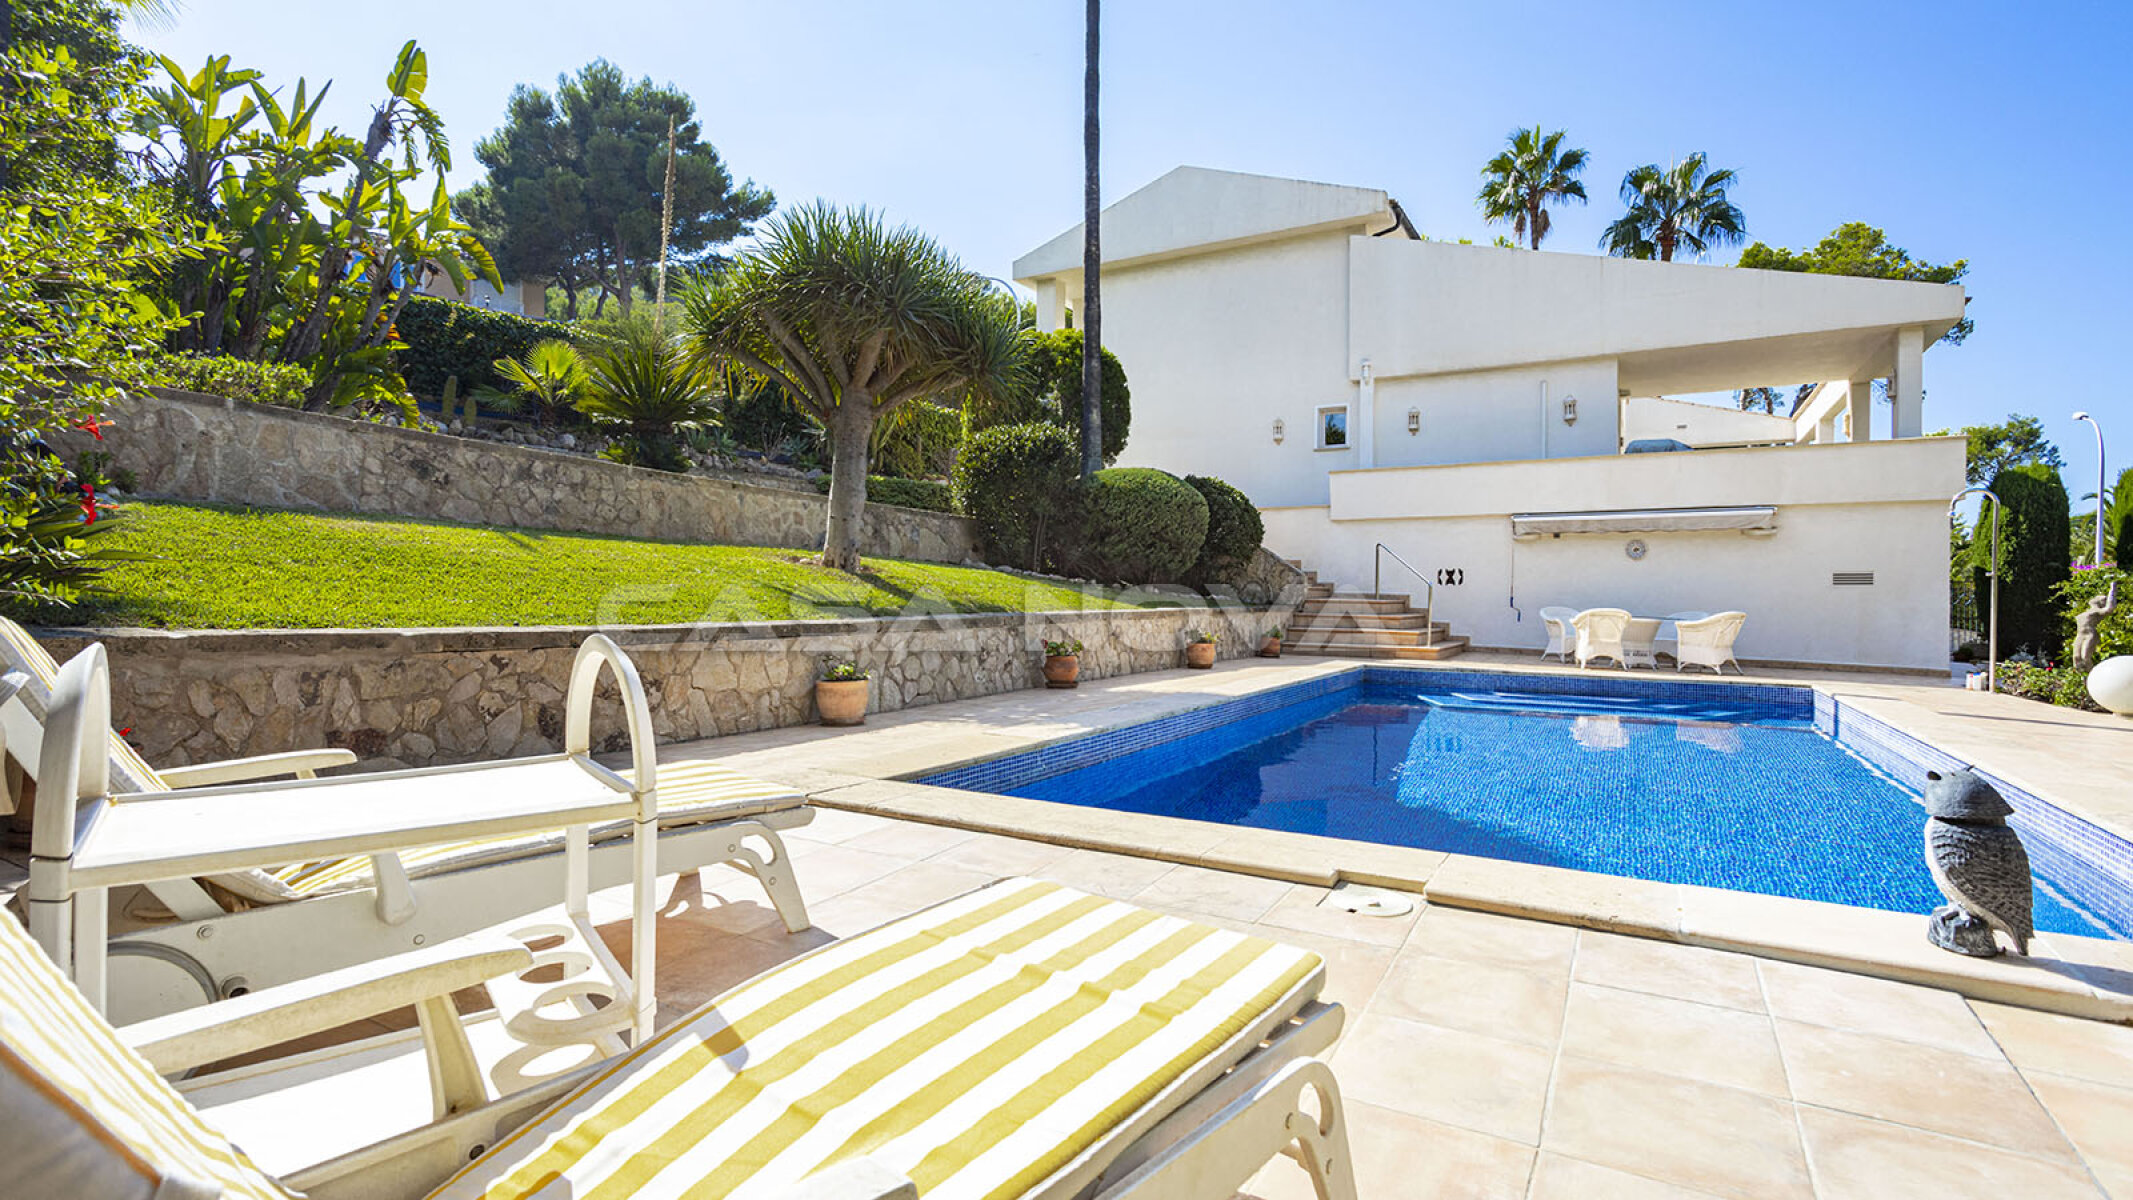 Mallorca Villa with Mediterranean garden